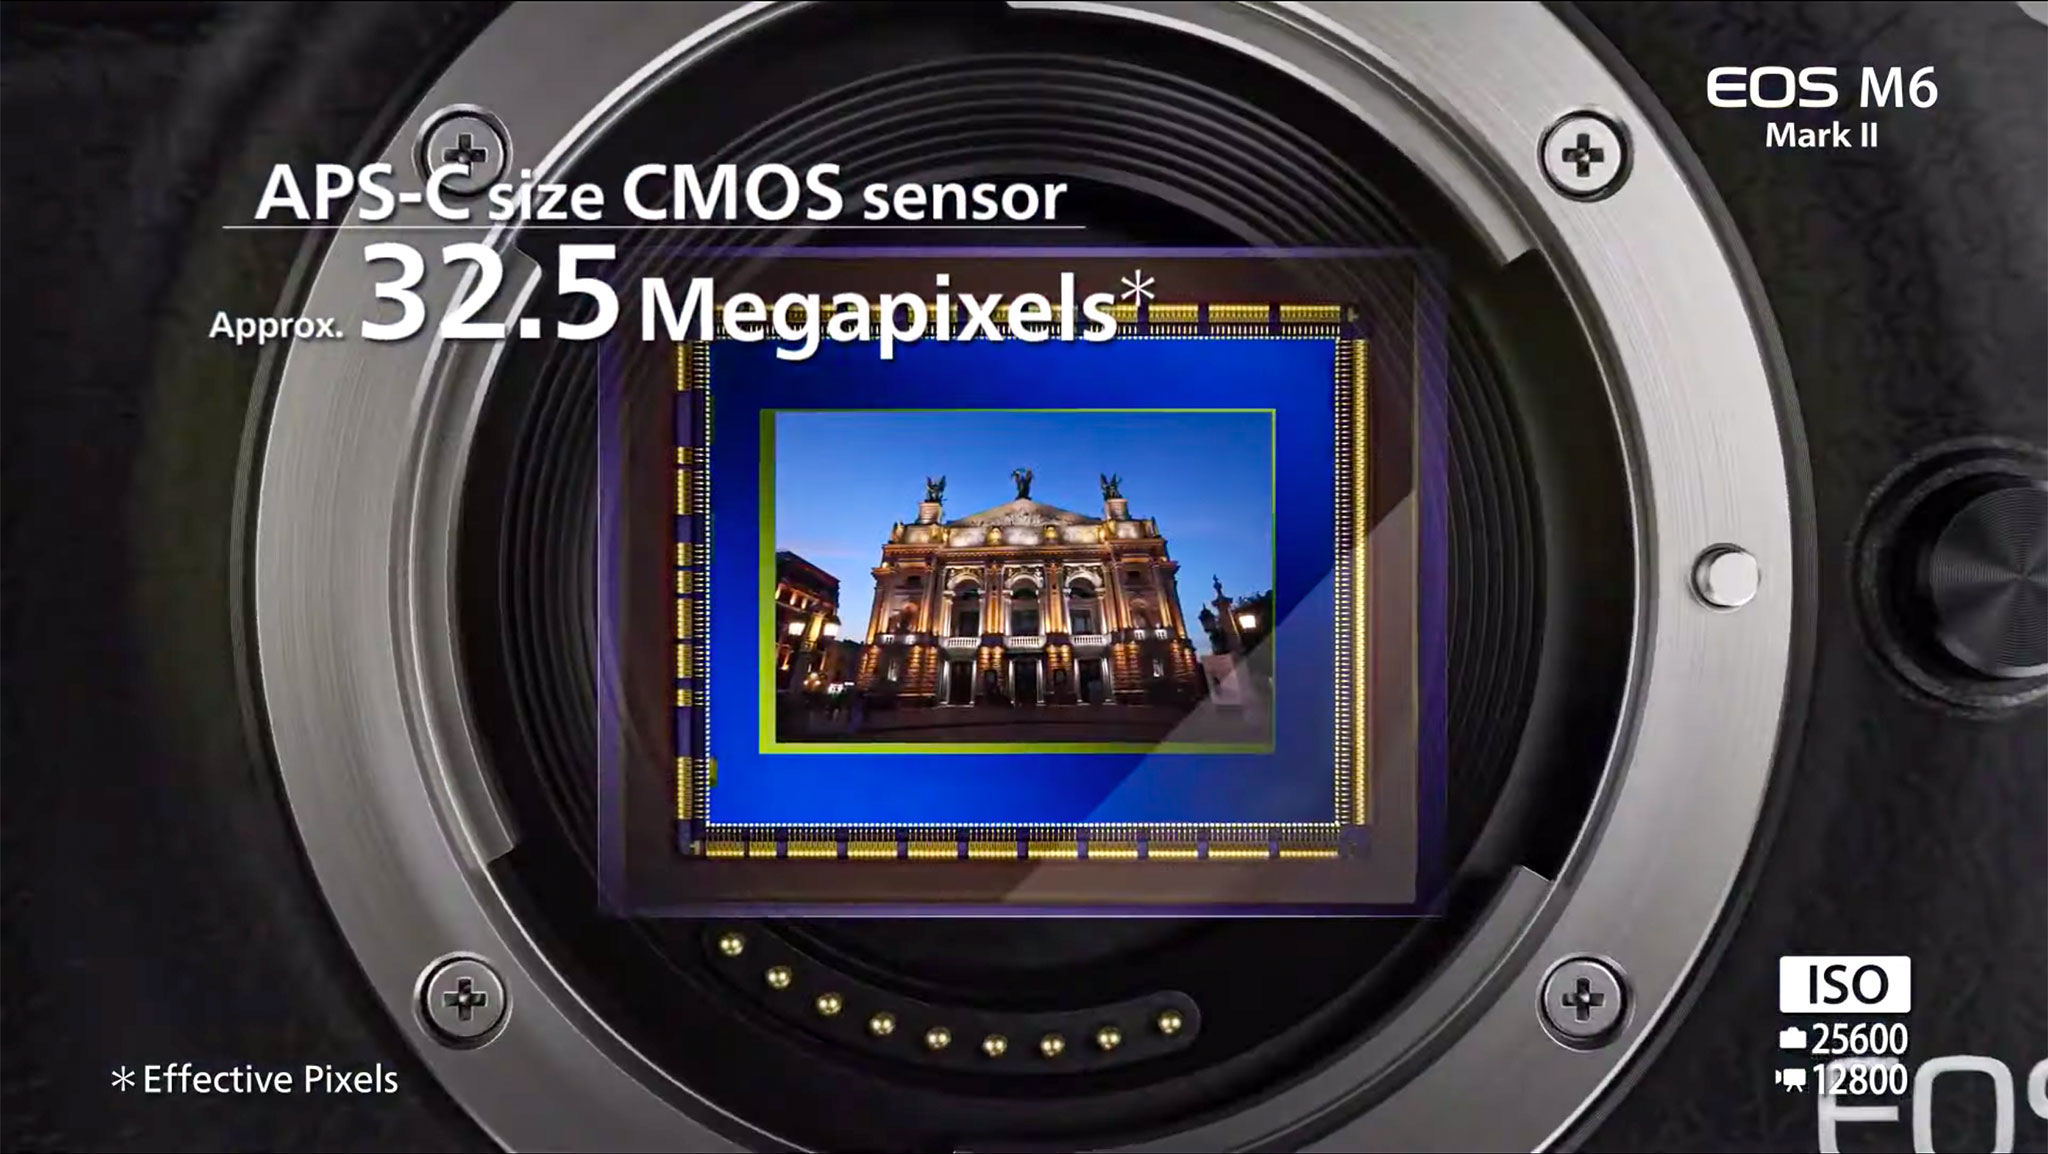 Đang tải Tinhte_Canon EOS M6 Mark II APS-C_00009.jpg…